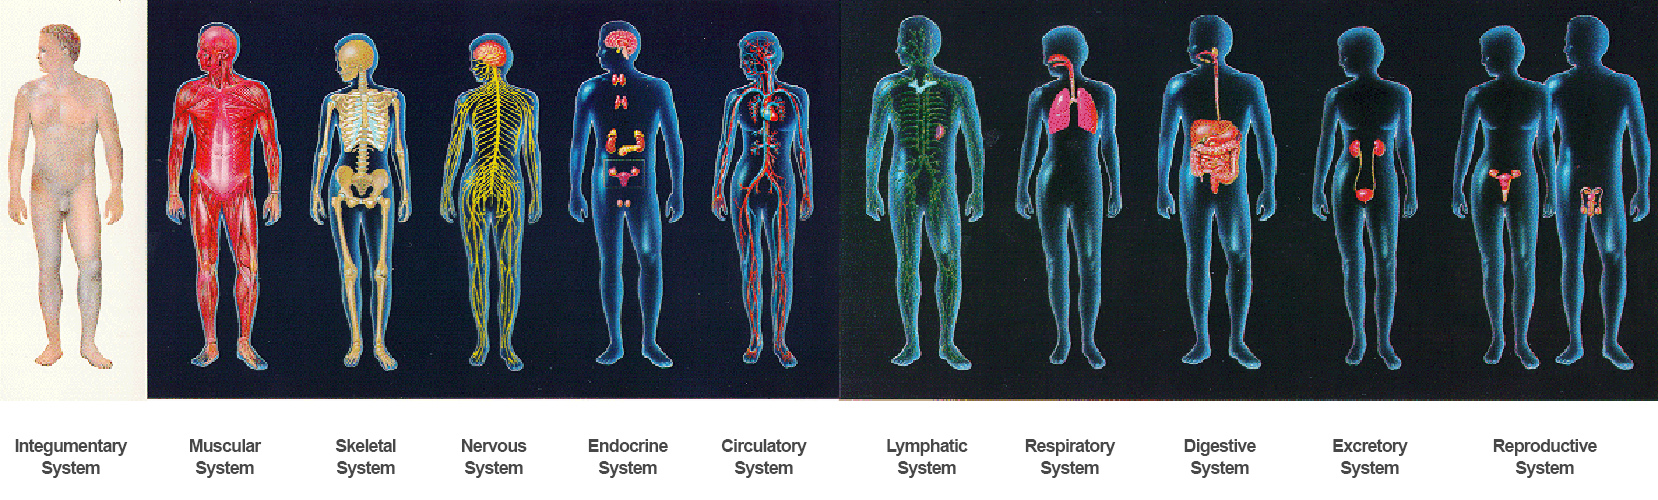 Изображения систем органов человека. 12 Систем организма человека. Системы тела человека. Системы органов организма человека. Сустмы организма человека.